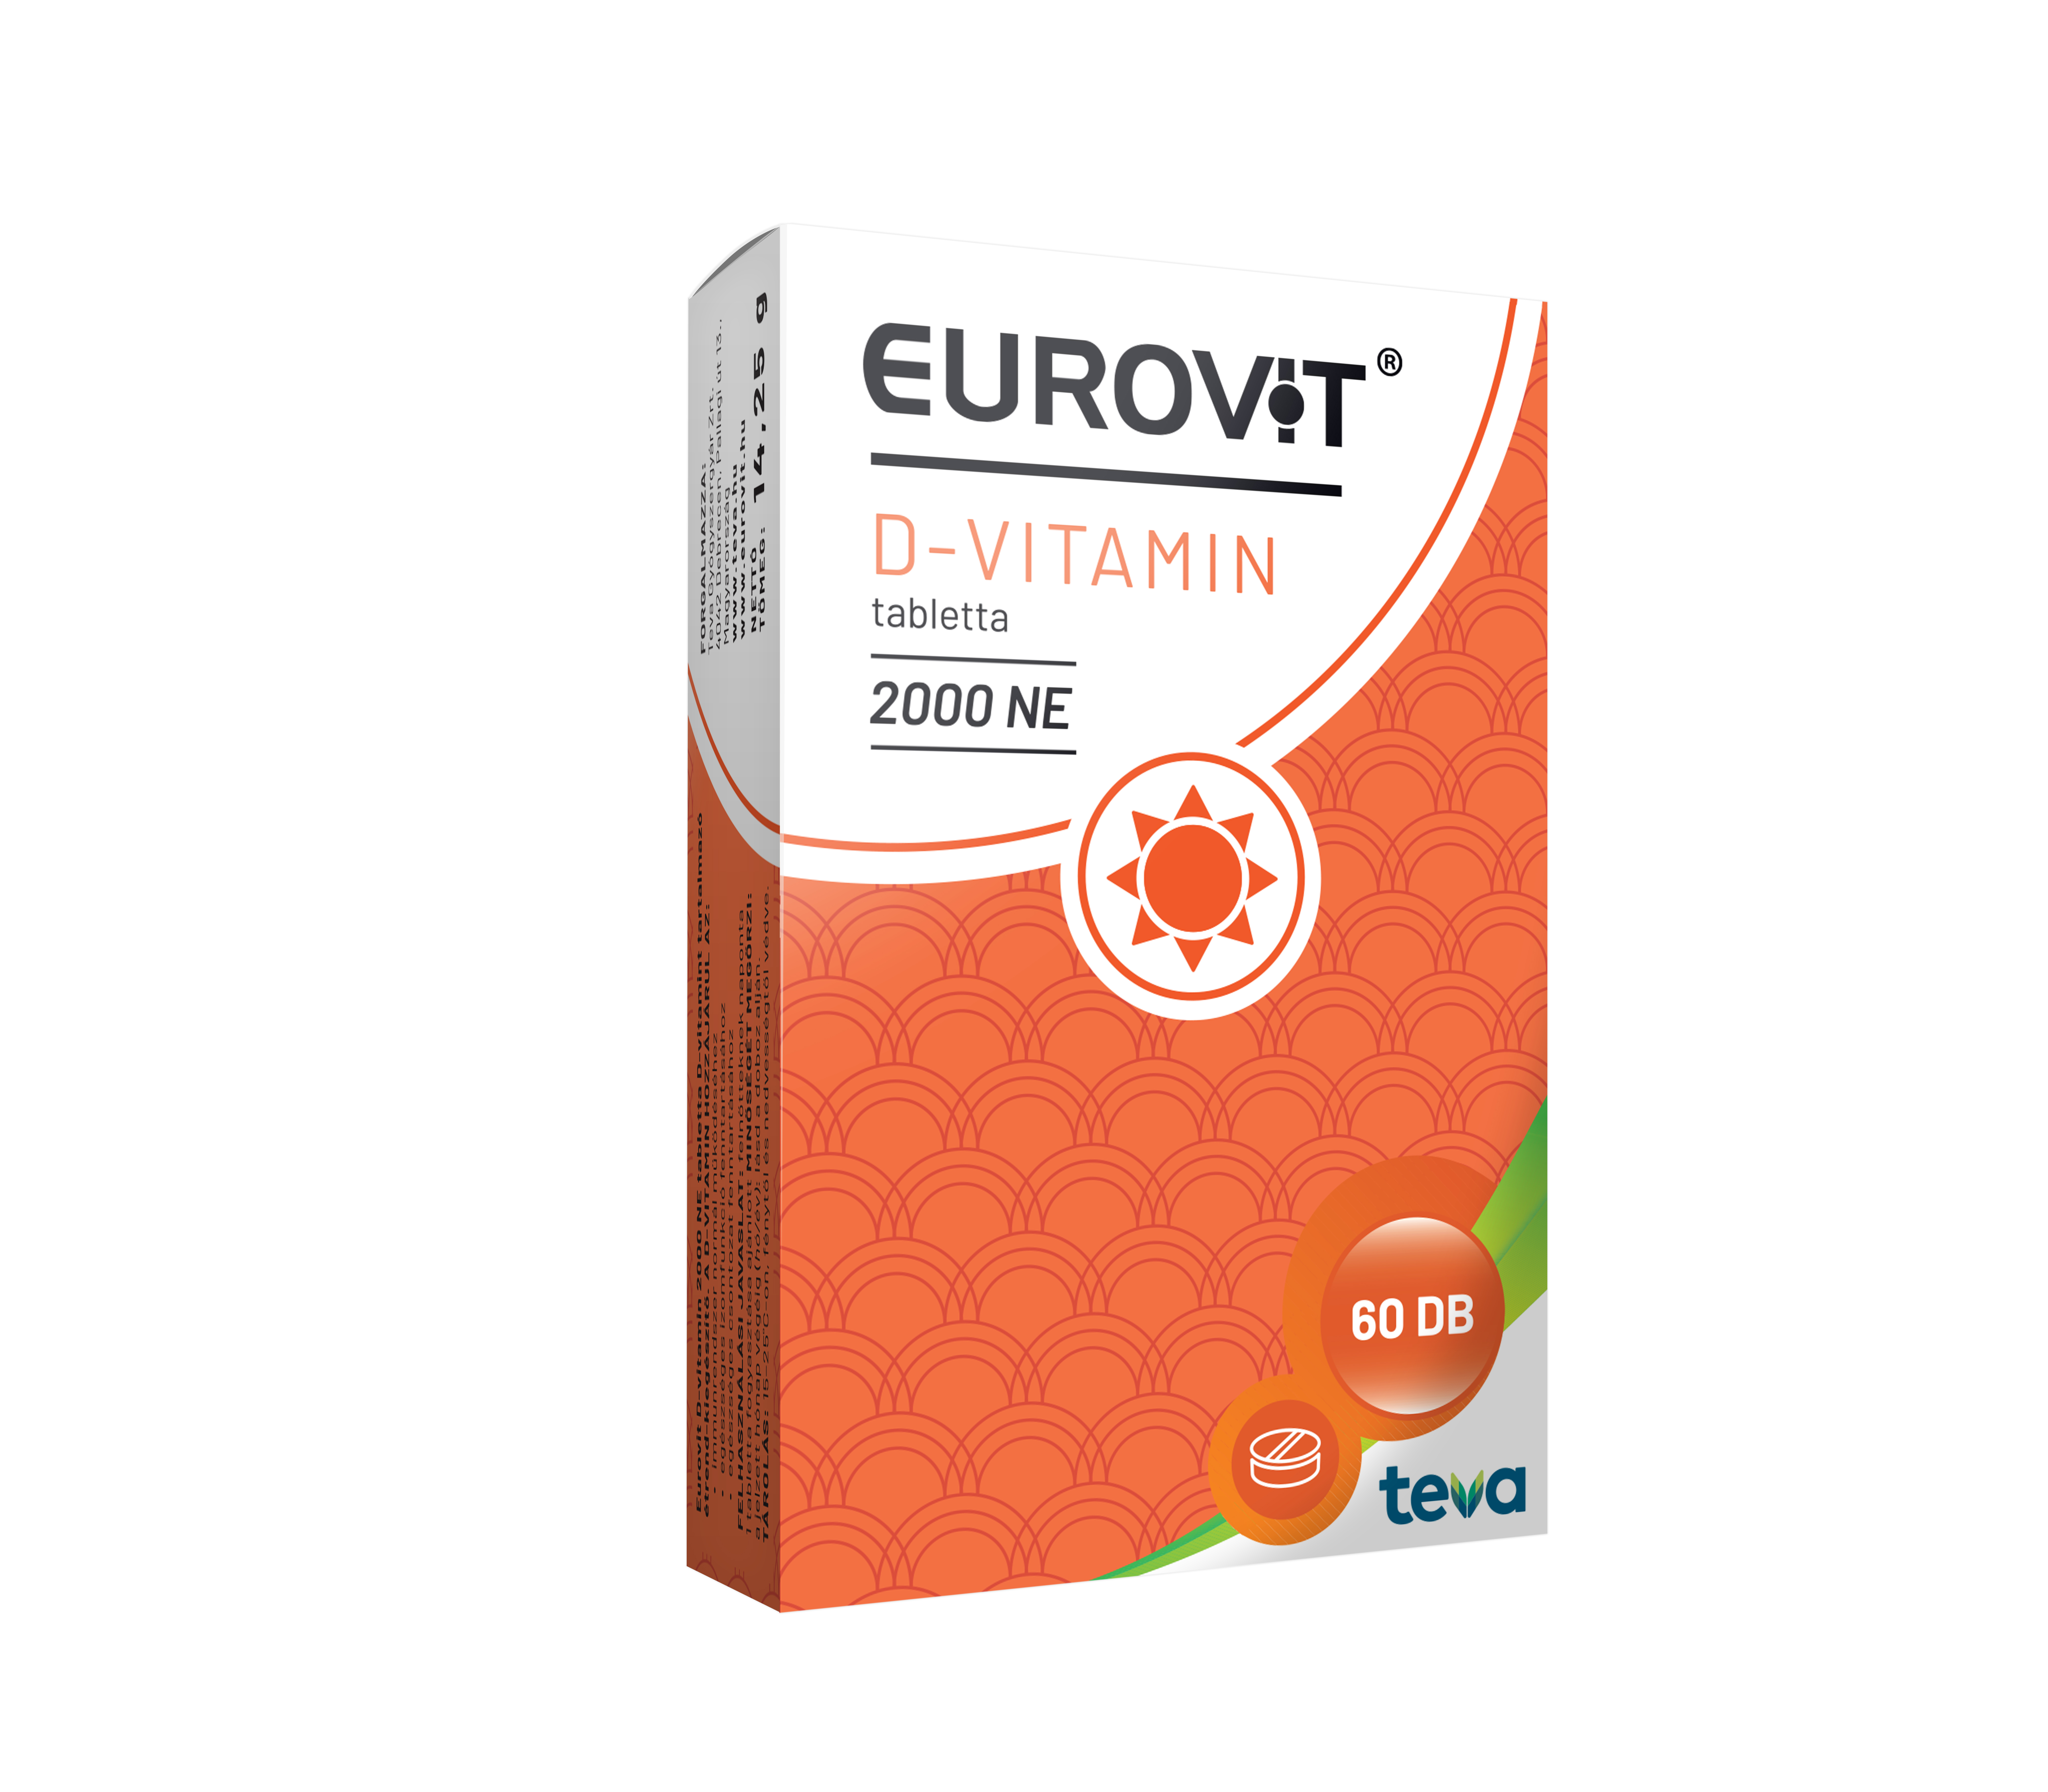 Eurovit D-vitamin 2000 NE  tabletta 